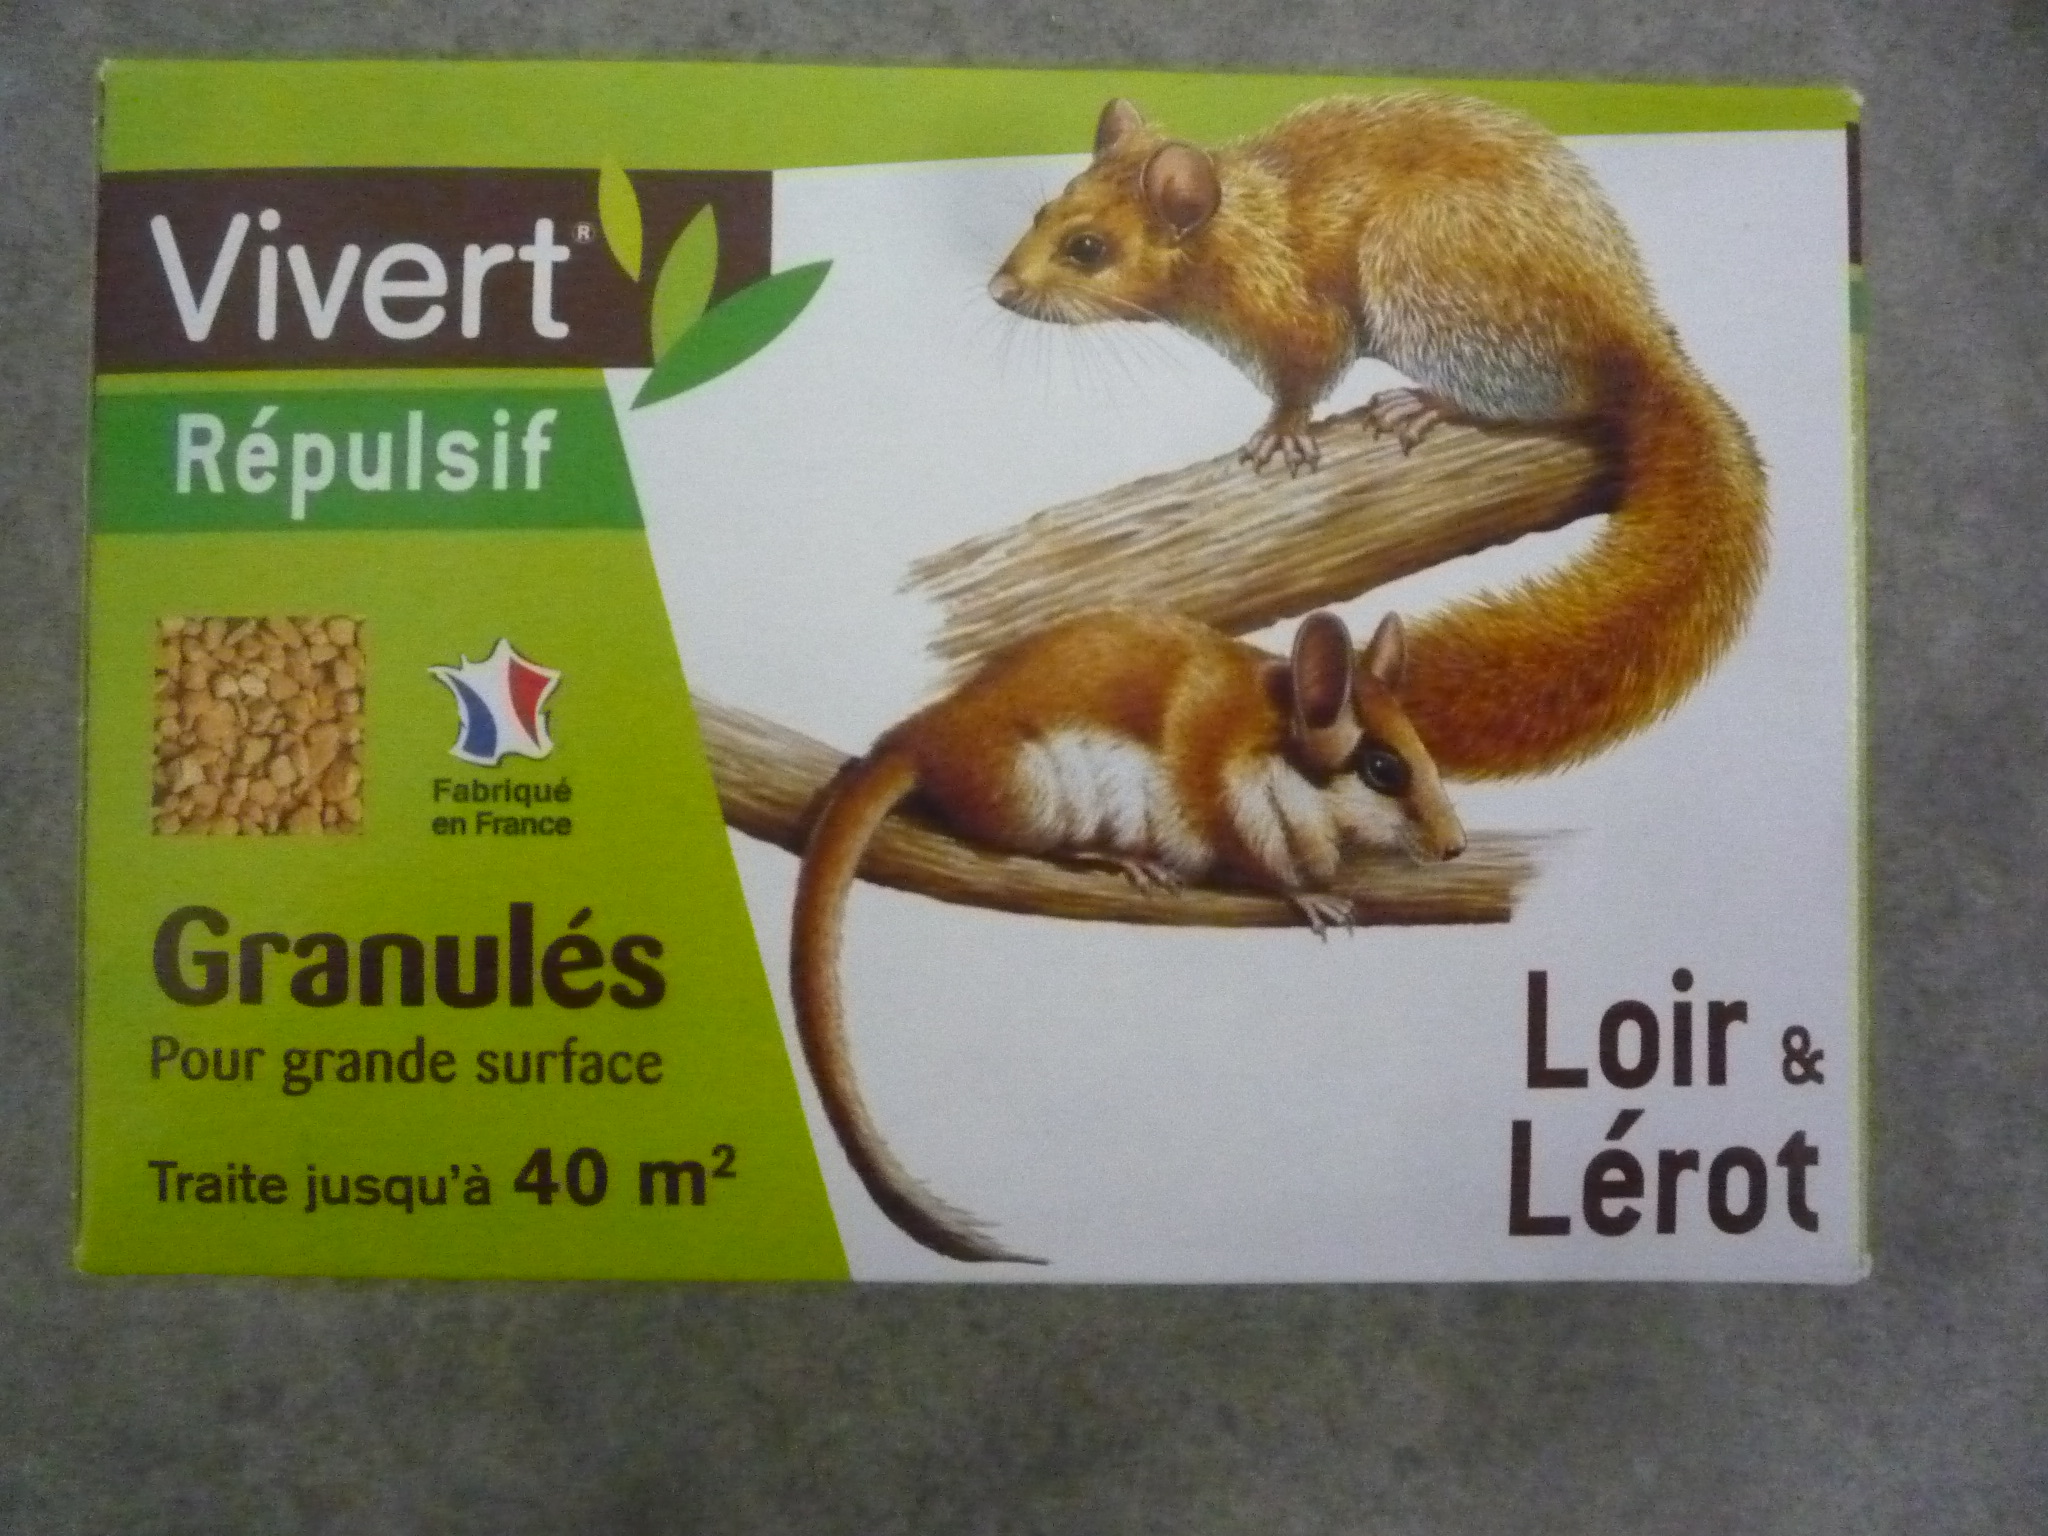 Lérot et Loir - Tous les produits de la catégorie Lérot et Loir